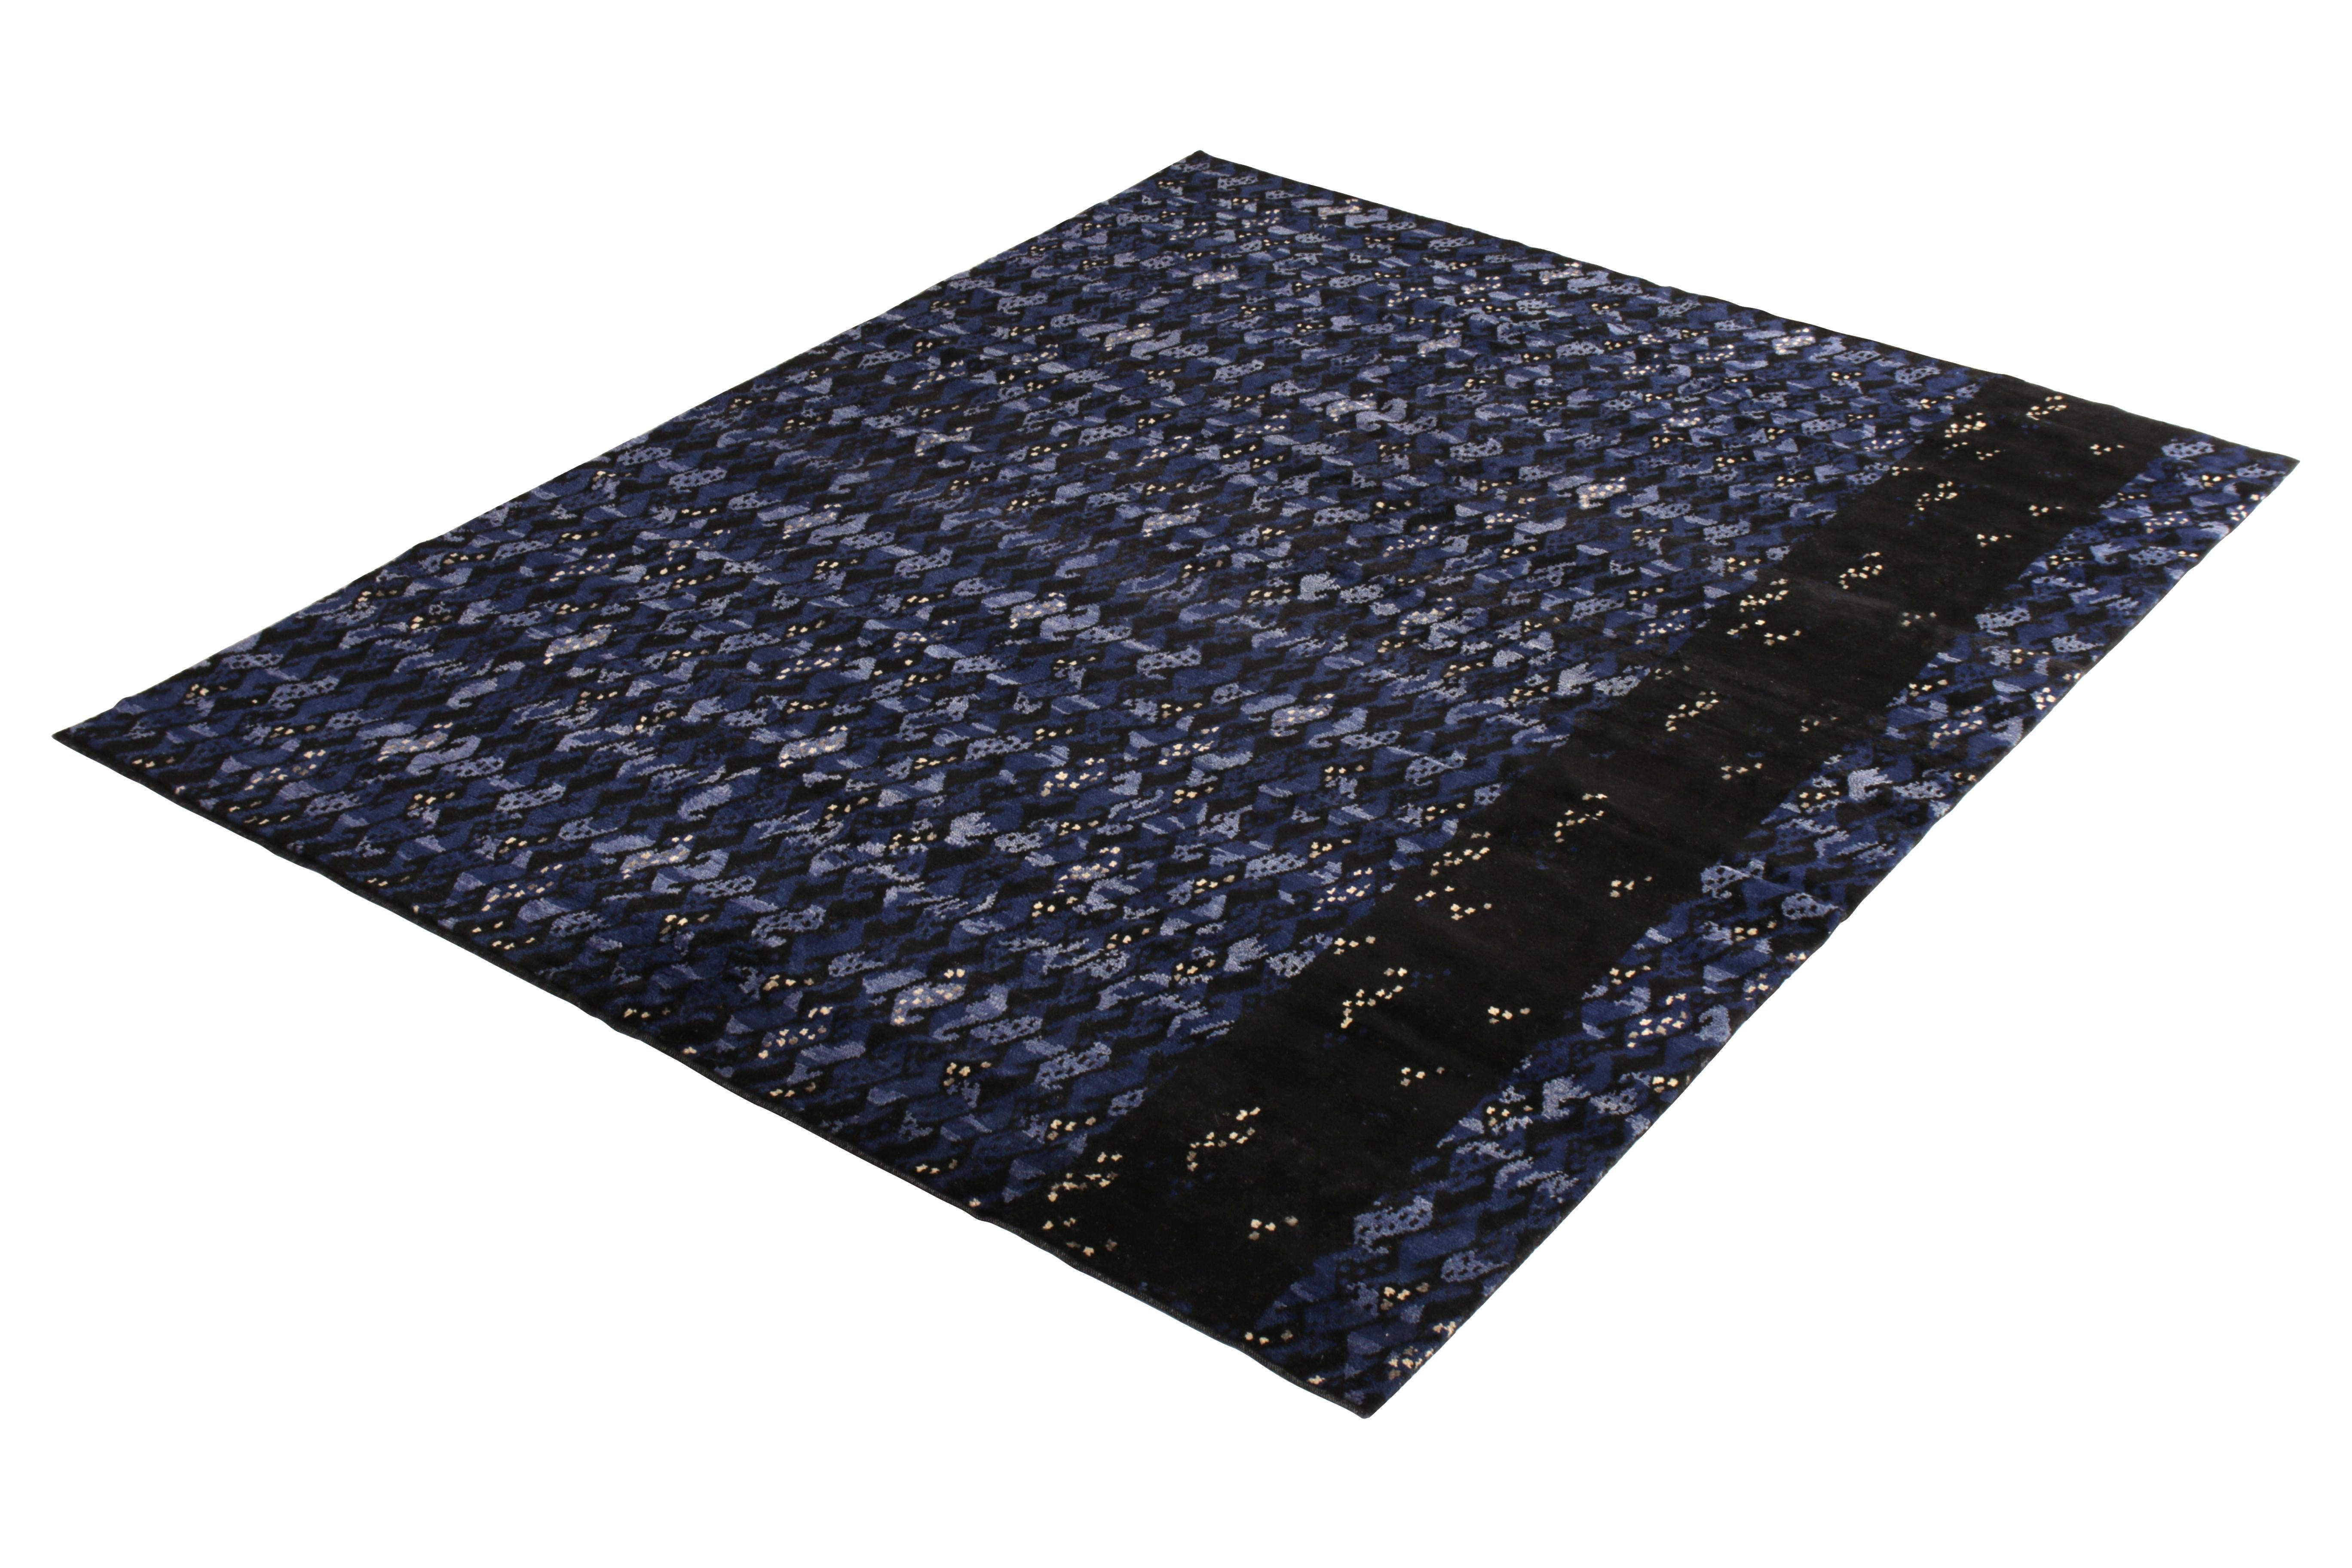 Dieser moderne Teppich im Format 9 × 12, handgeknüpft aus weichem, strapazierfähigem Wollflor, gehört zu den neuesten Flor-Ergänzungen der skandinavischen Kollektion von Rug & Kilim, die den schwedischen Modernismus mit neuen, großflächigen